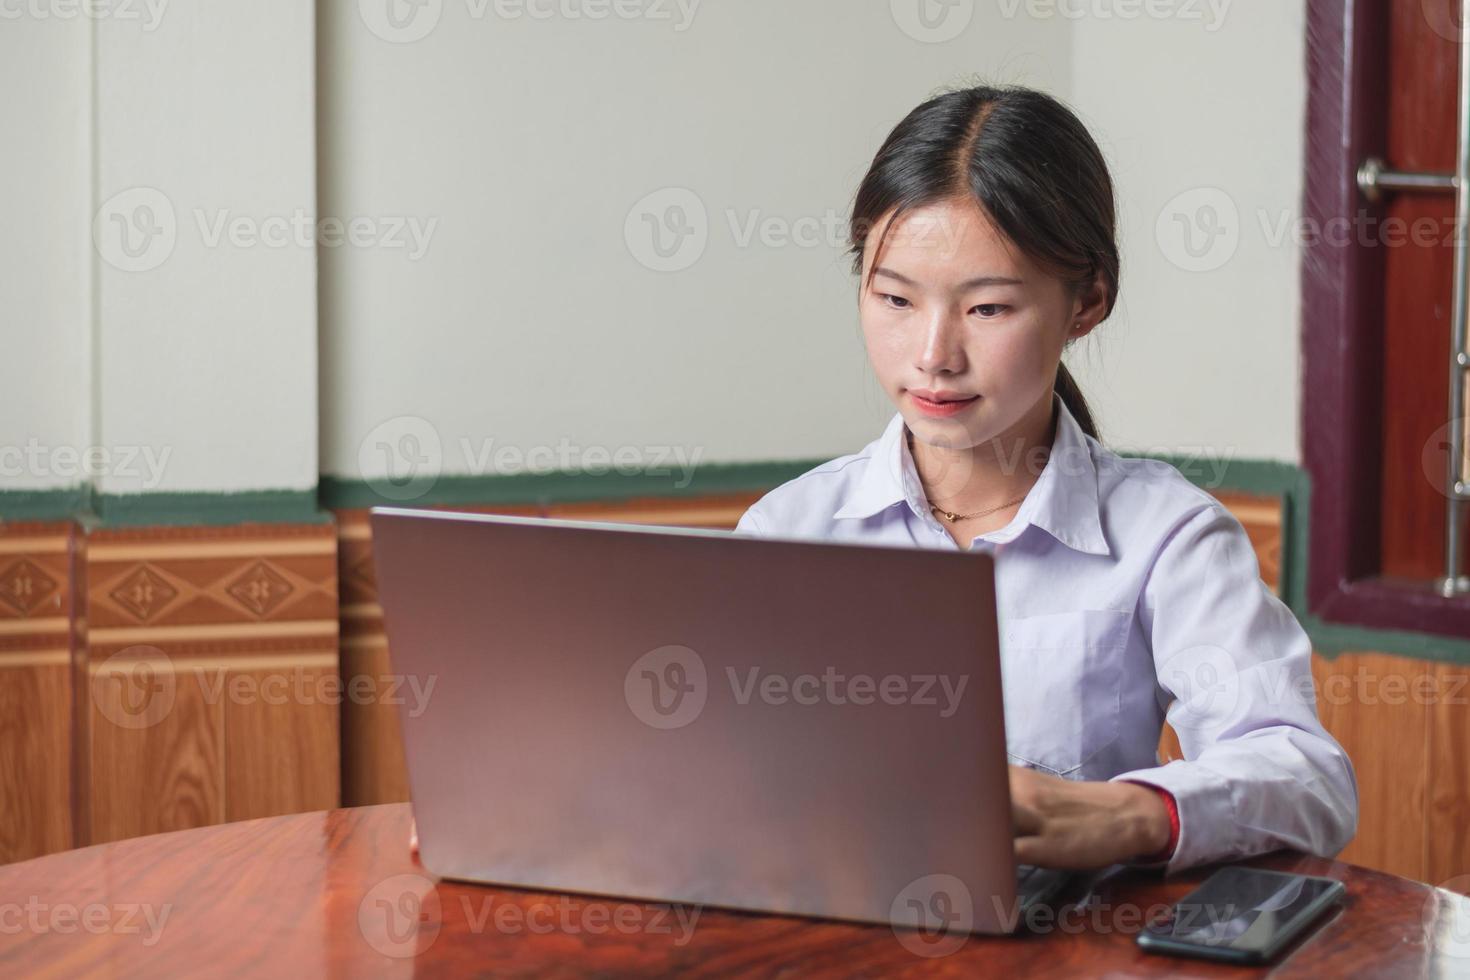 ein studentenmädchen mit weißem hemd studentenanzug tippt und lernt online vom laptop im haus, mit notebook und w-lan auf dem schreibtisch. bildungs- und studienkonzept, kopierraumaufnahme foto